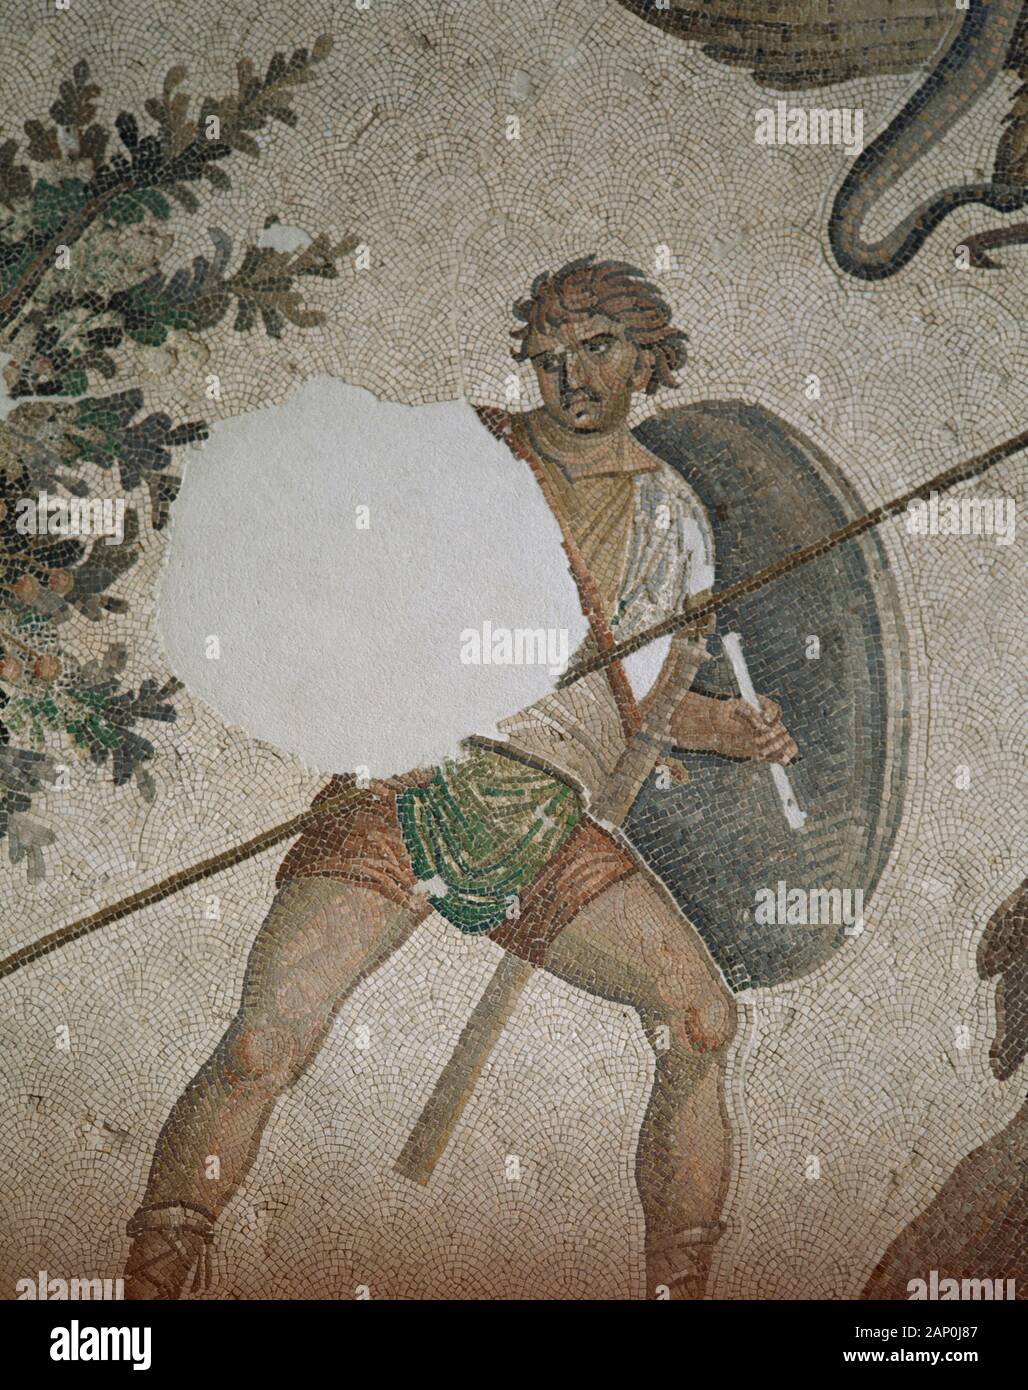 Jagd Szene. Mosaik zwischen dem vierten und fünften Jahrhundert datiert. Von dem Großen Palast von Konstantinopel. Mosaic Museum. Istanbul, Türkei. Byzantinischen Periode. Stockfoto